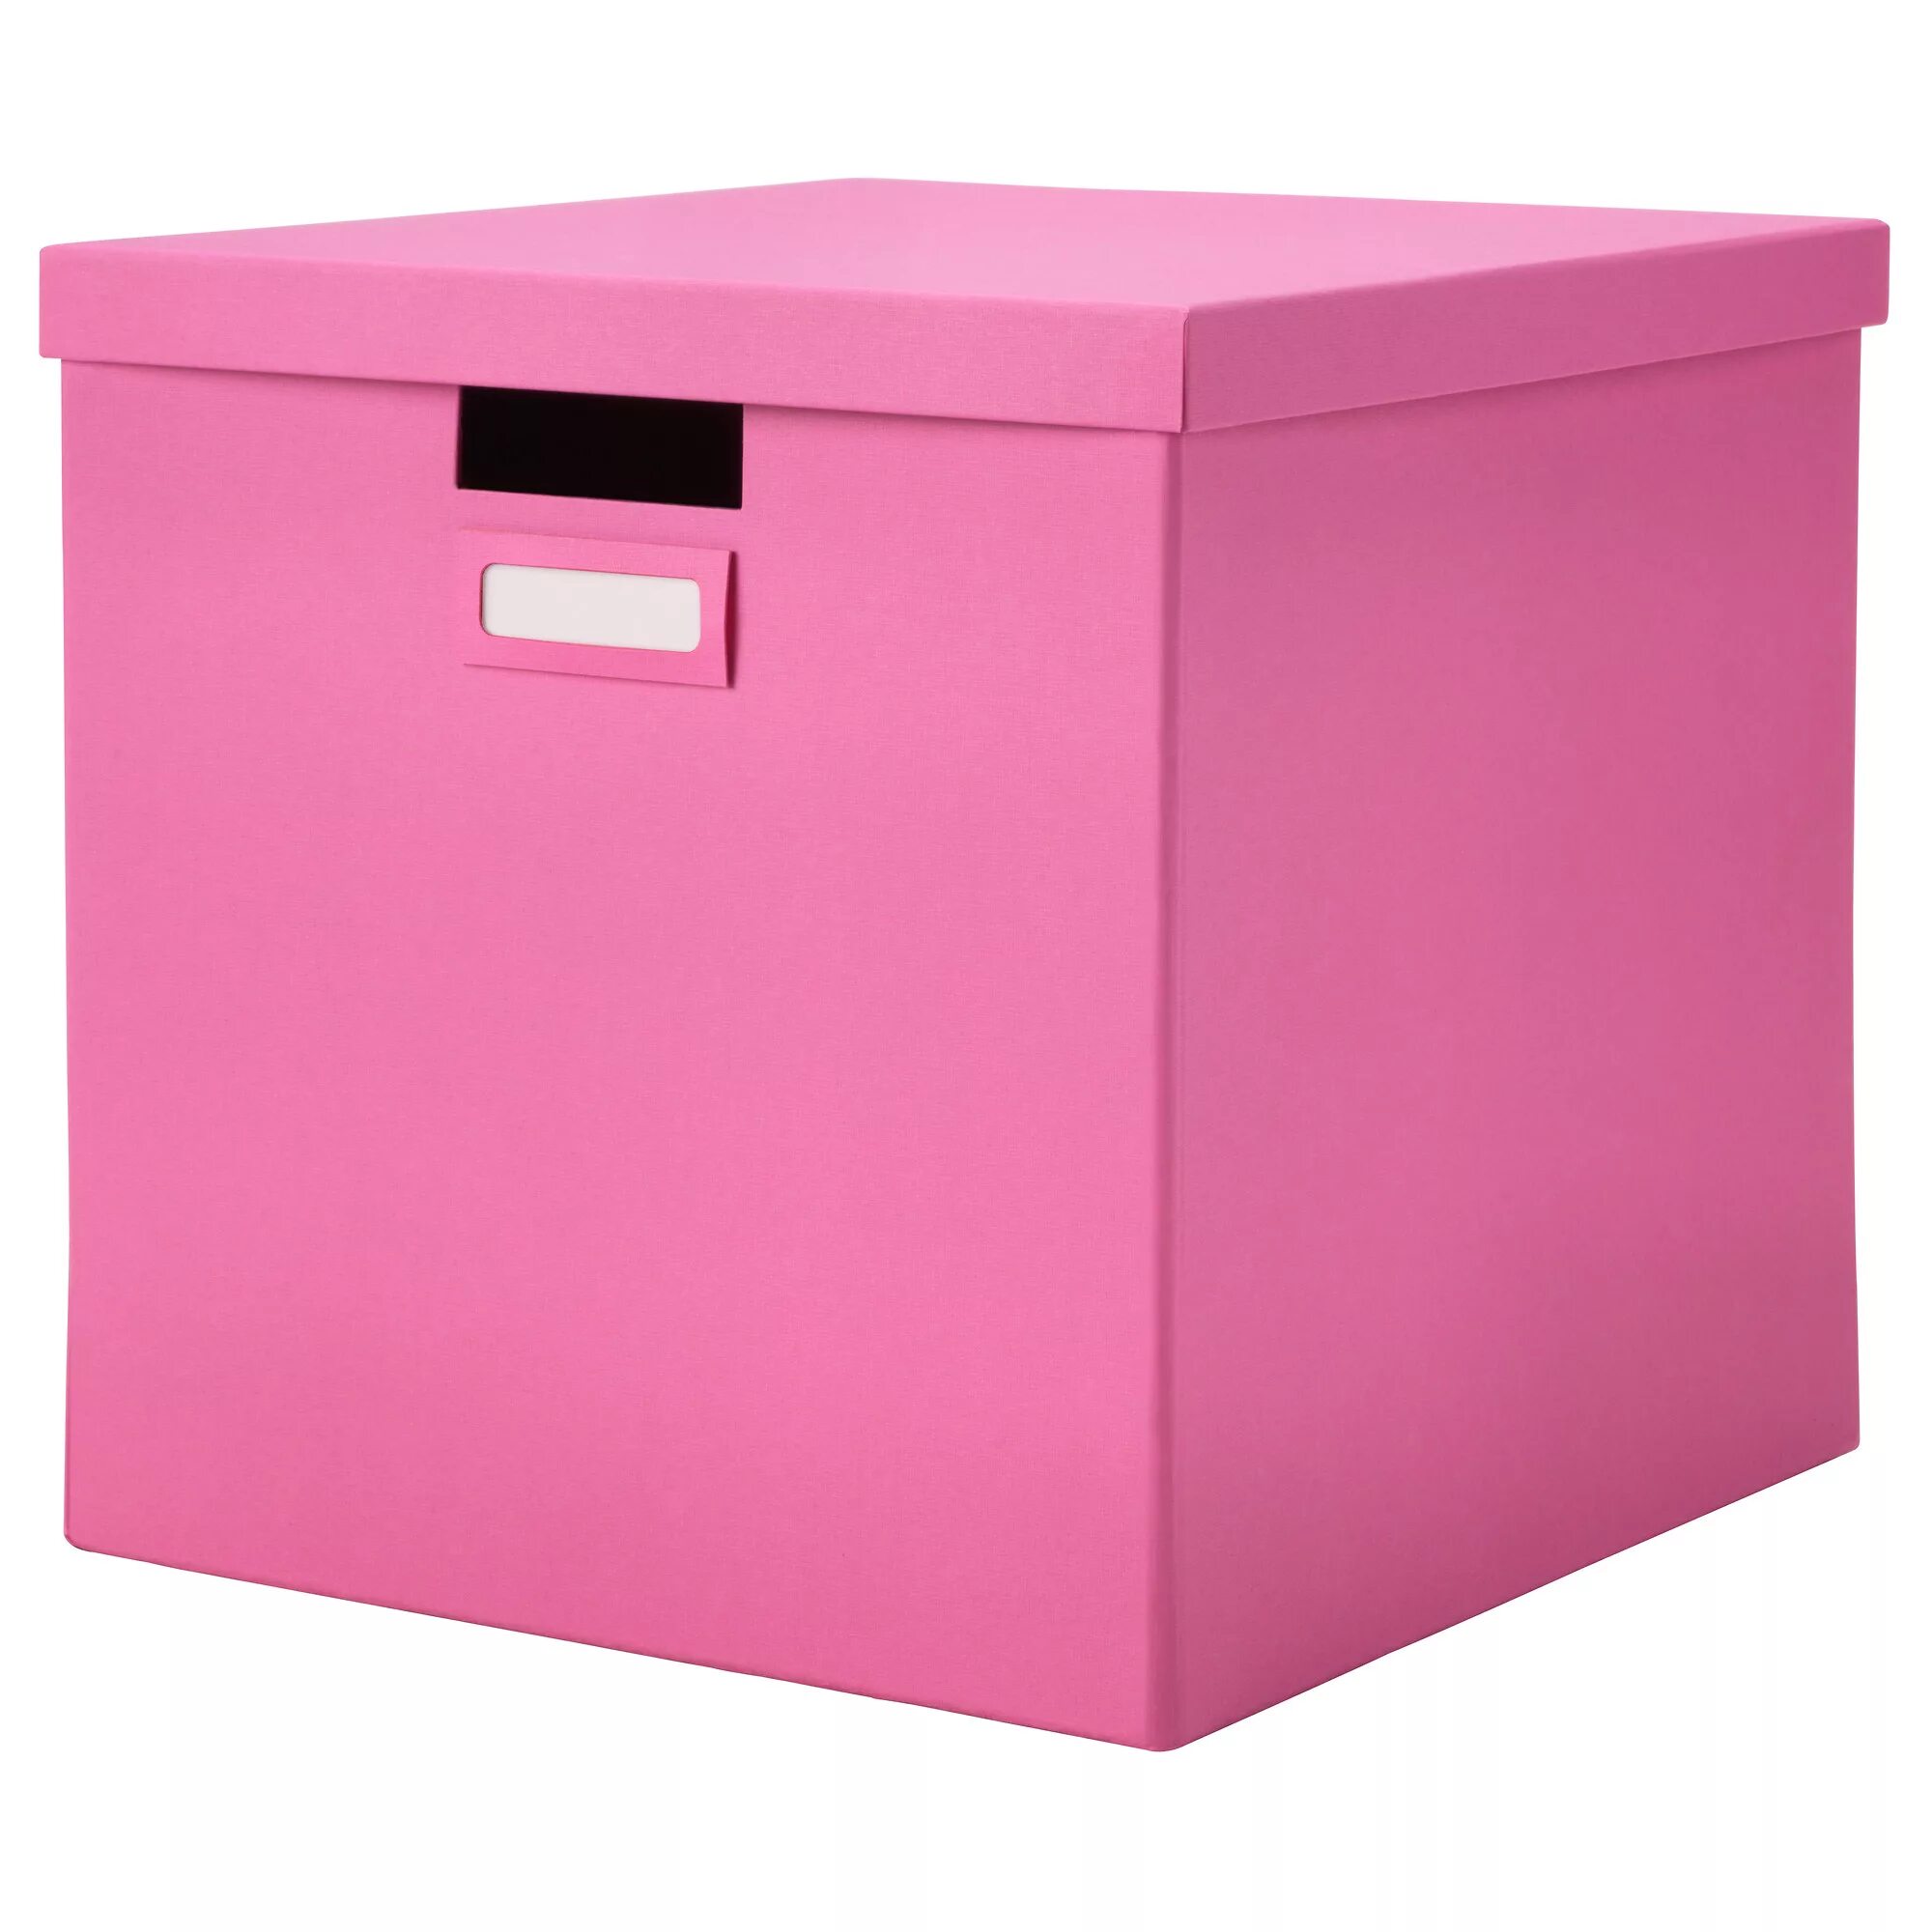 Как подписать ящики для хранения. ТЬЕНА коробка с крышкой черный 32x35x32 см. ТЬЕНА коробка с крышкой икеа. Ikea - ПАЛЬРА коробка с крышкой. Ящик для хранения розовый.